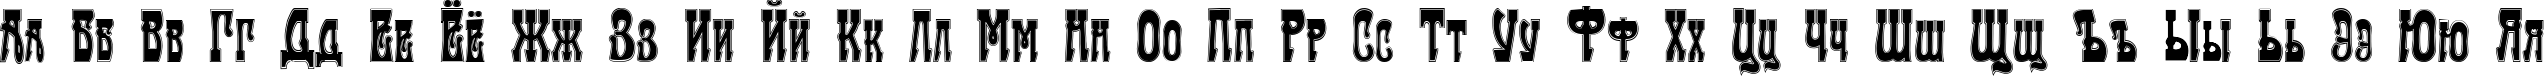 Пример написания русского алфавита шрифтом Traktir-Modern Contour